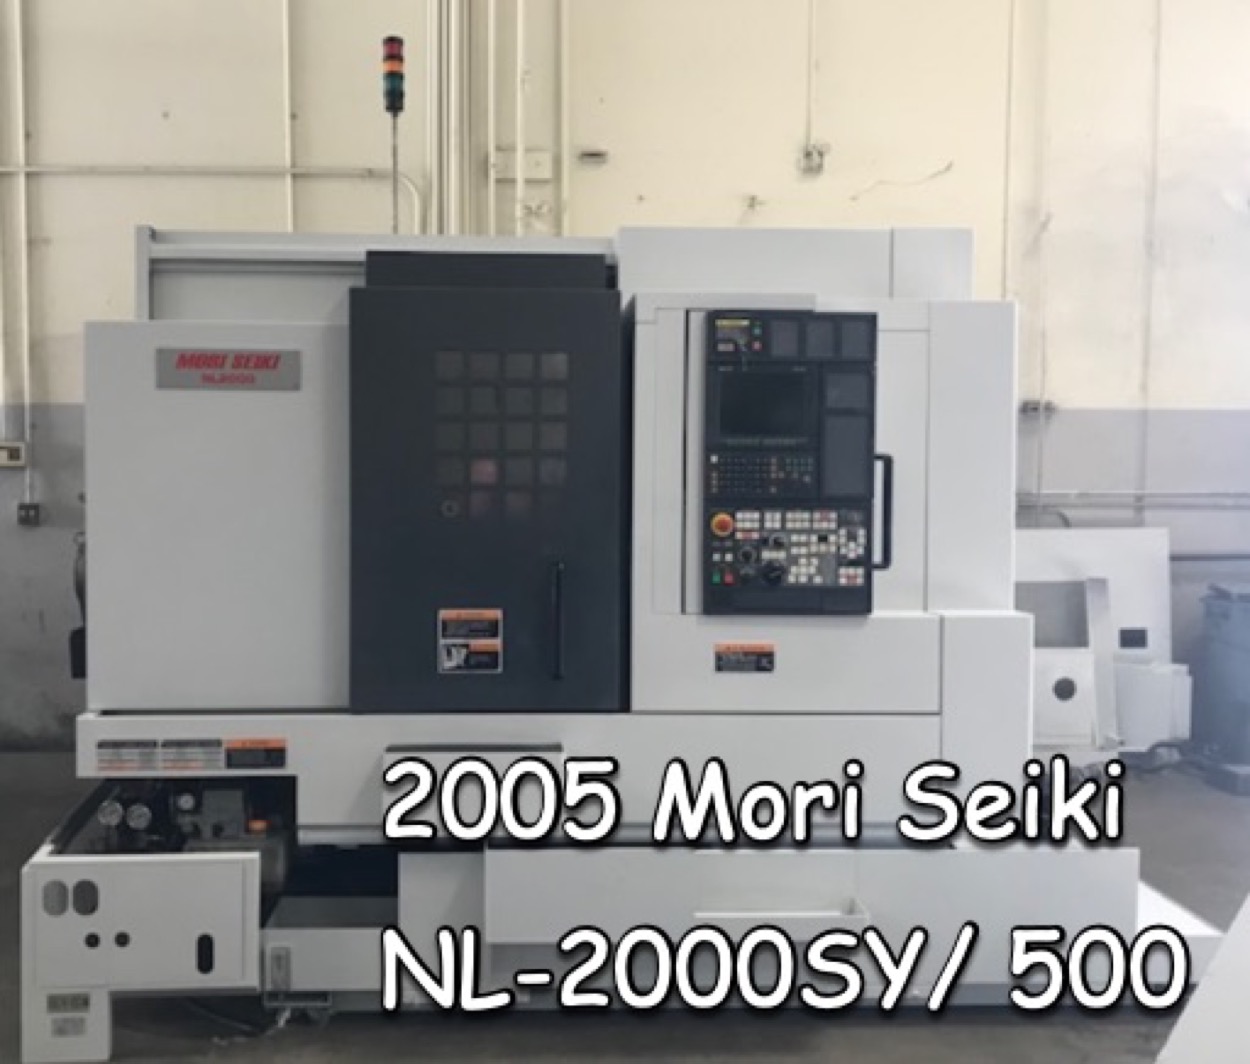 Mori-Seiki NL-2000SY/500 2005